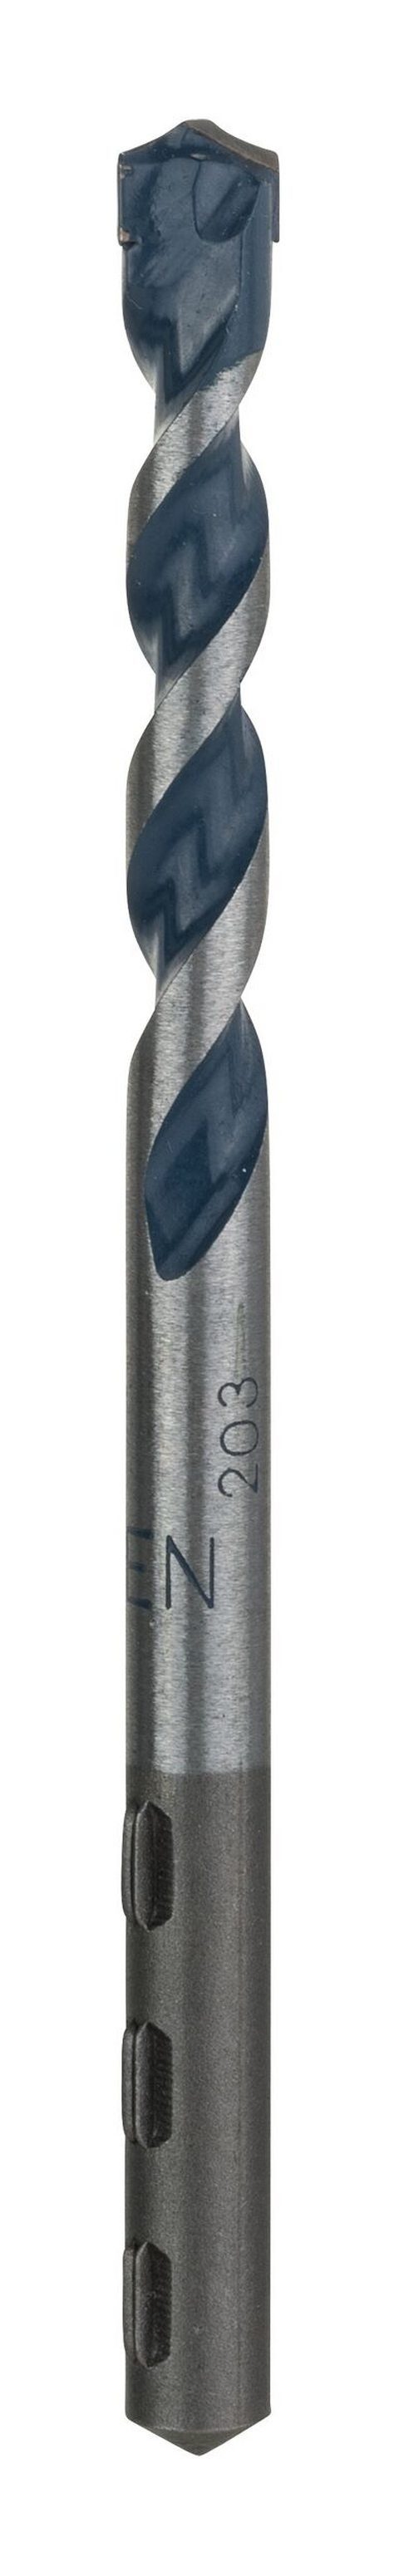 BOSCH Steinbohrer, CYL-5 (Blue Granite) Betonbohrer - 7 x 50 x 100 mm - 1er-Pack